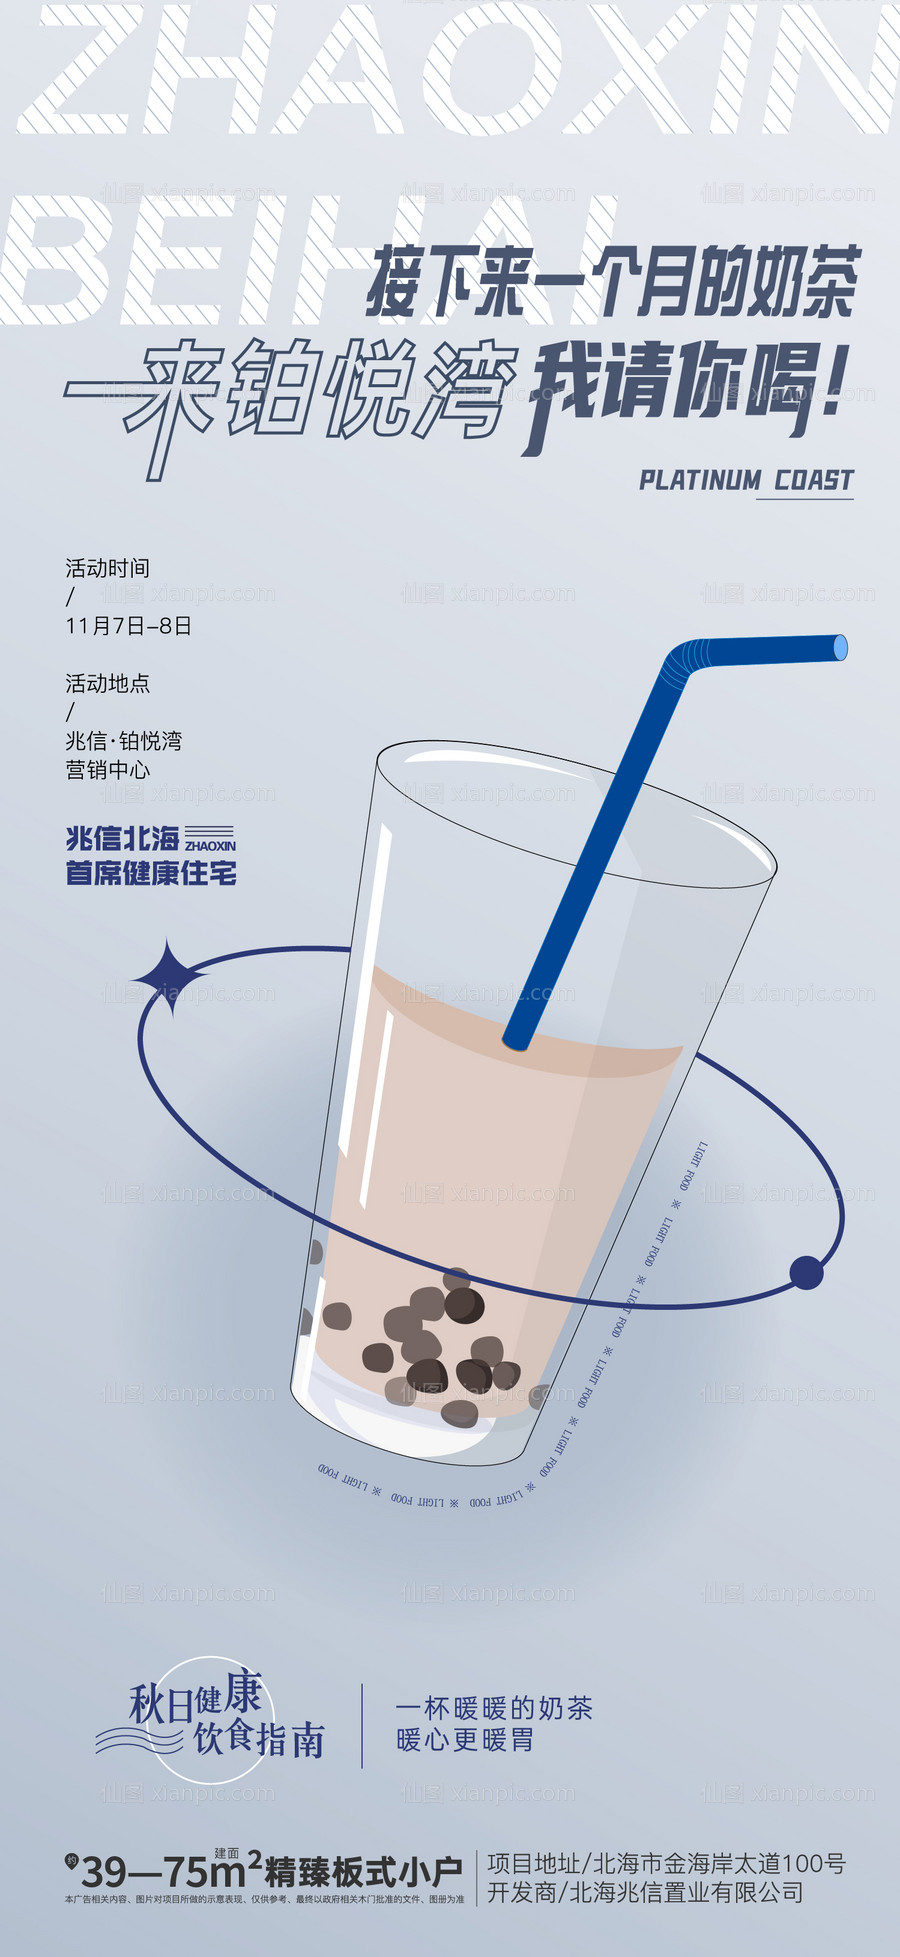 素材乐-地产奶茶饮品暖场活动海报